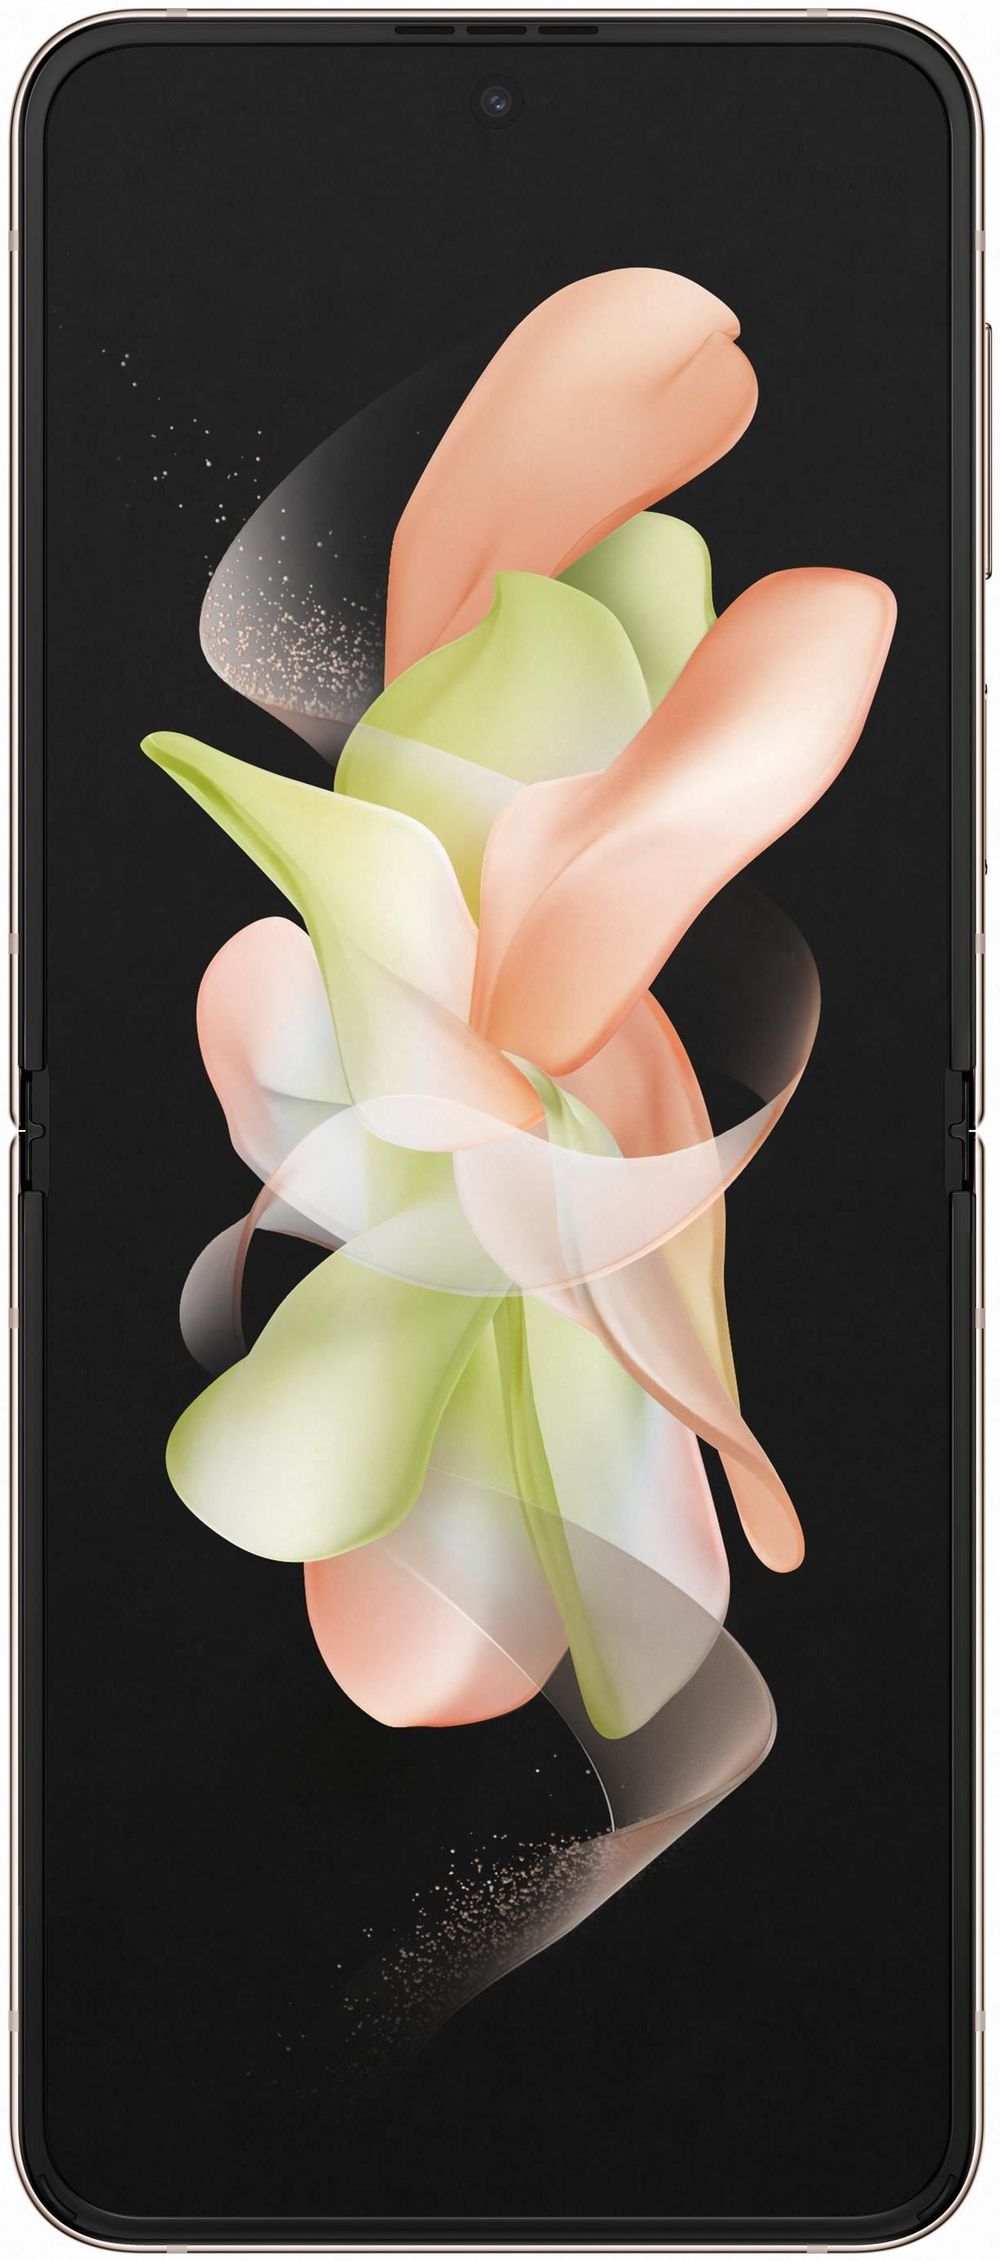 Samsung Galaxy Z Flip4 - 5G Smartphone - Dual-SIM - RAM 8 GB / Interner Speicher 128 GB - OLED-Display - 6.7 - 6.7 - 2640 x 1080 Pixel 2640 x 1080 Pixel (120 Hz) - 2 x Rückkamera 12 MP, 12 MP - front camera 10 MP - rosa goldfarben